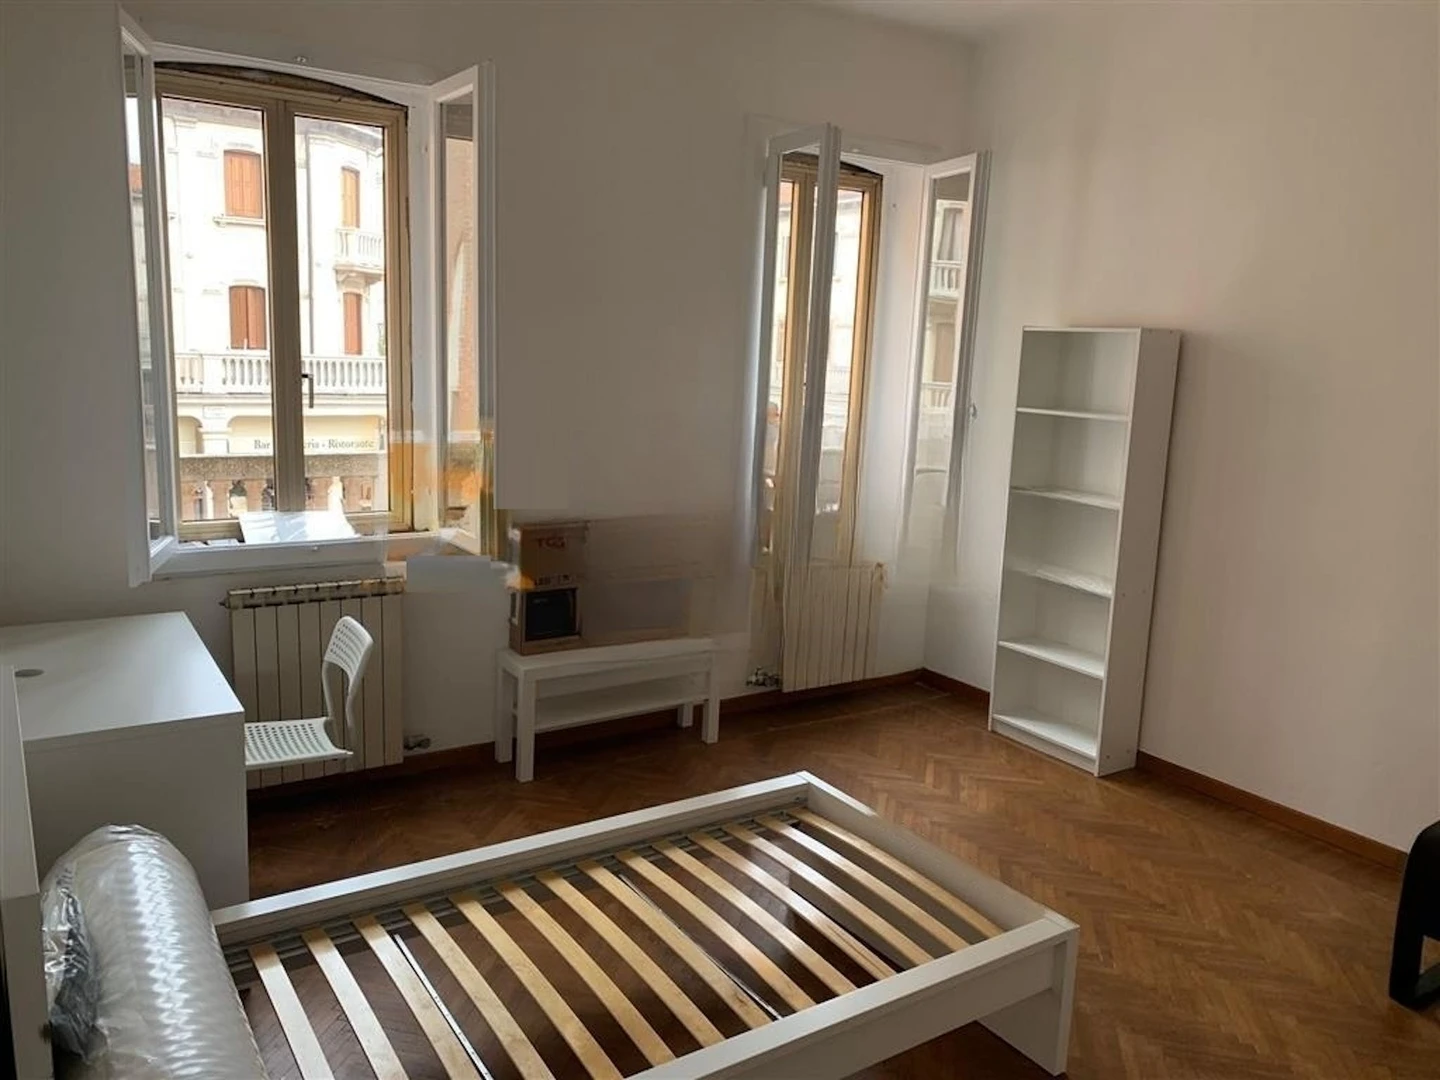 Alquiler de habitación en piso compartido en Venezia